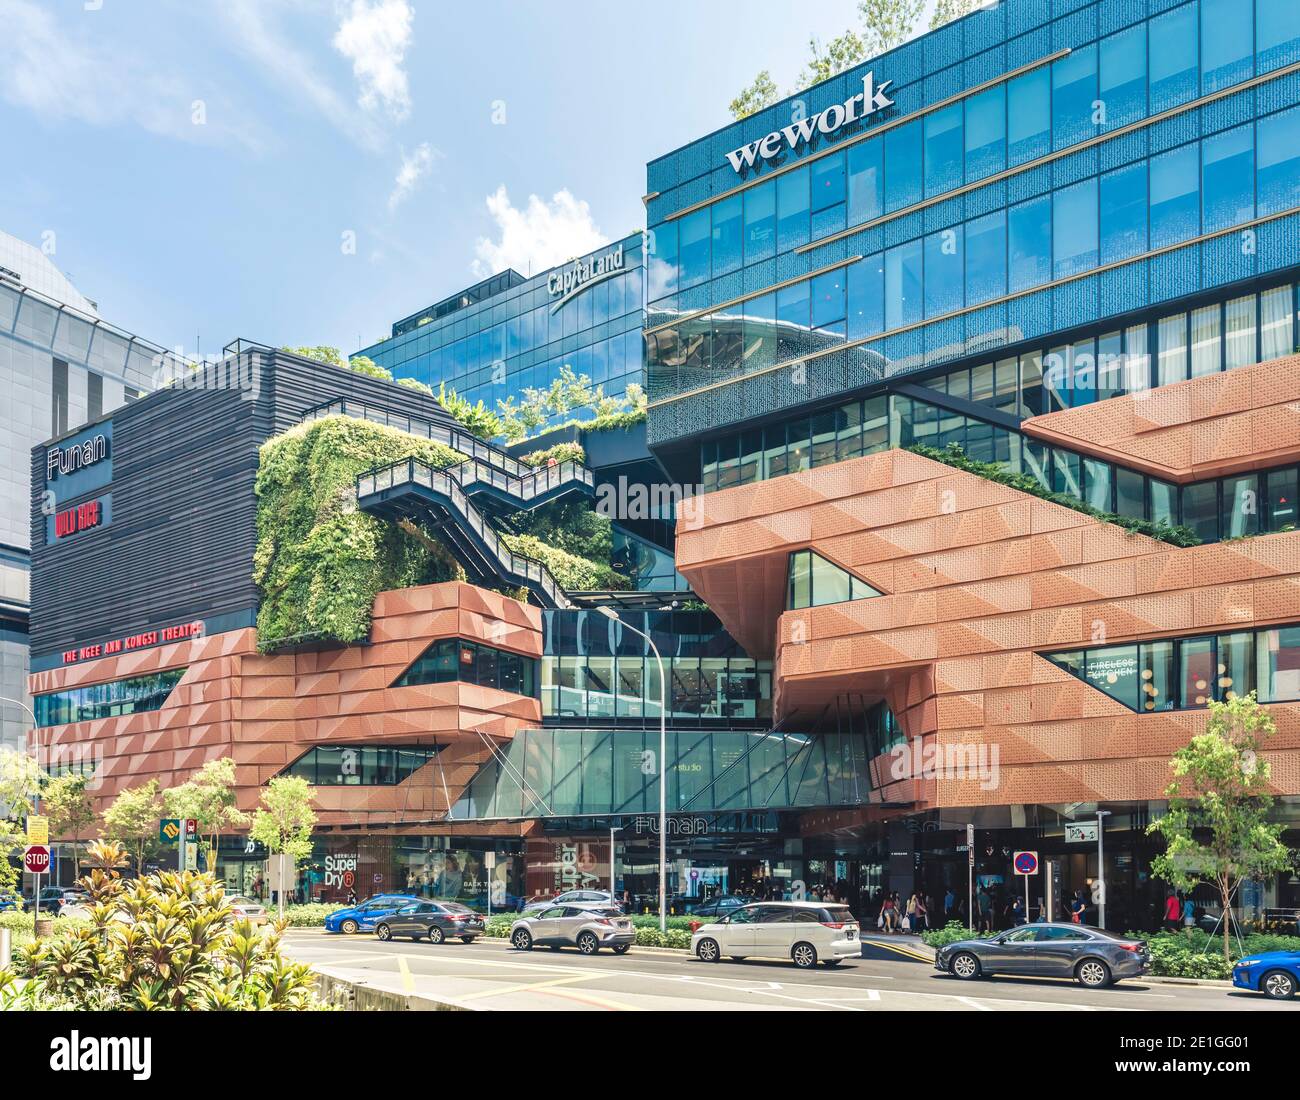 Außenansicht von Funan Singapore, einem integrierten Mixed-Use Hub mit Erlebnisverkauf, Singapur. Stockfoto